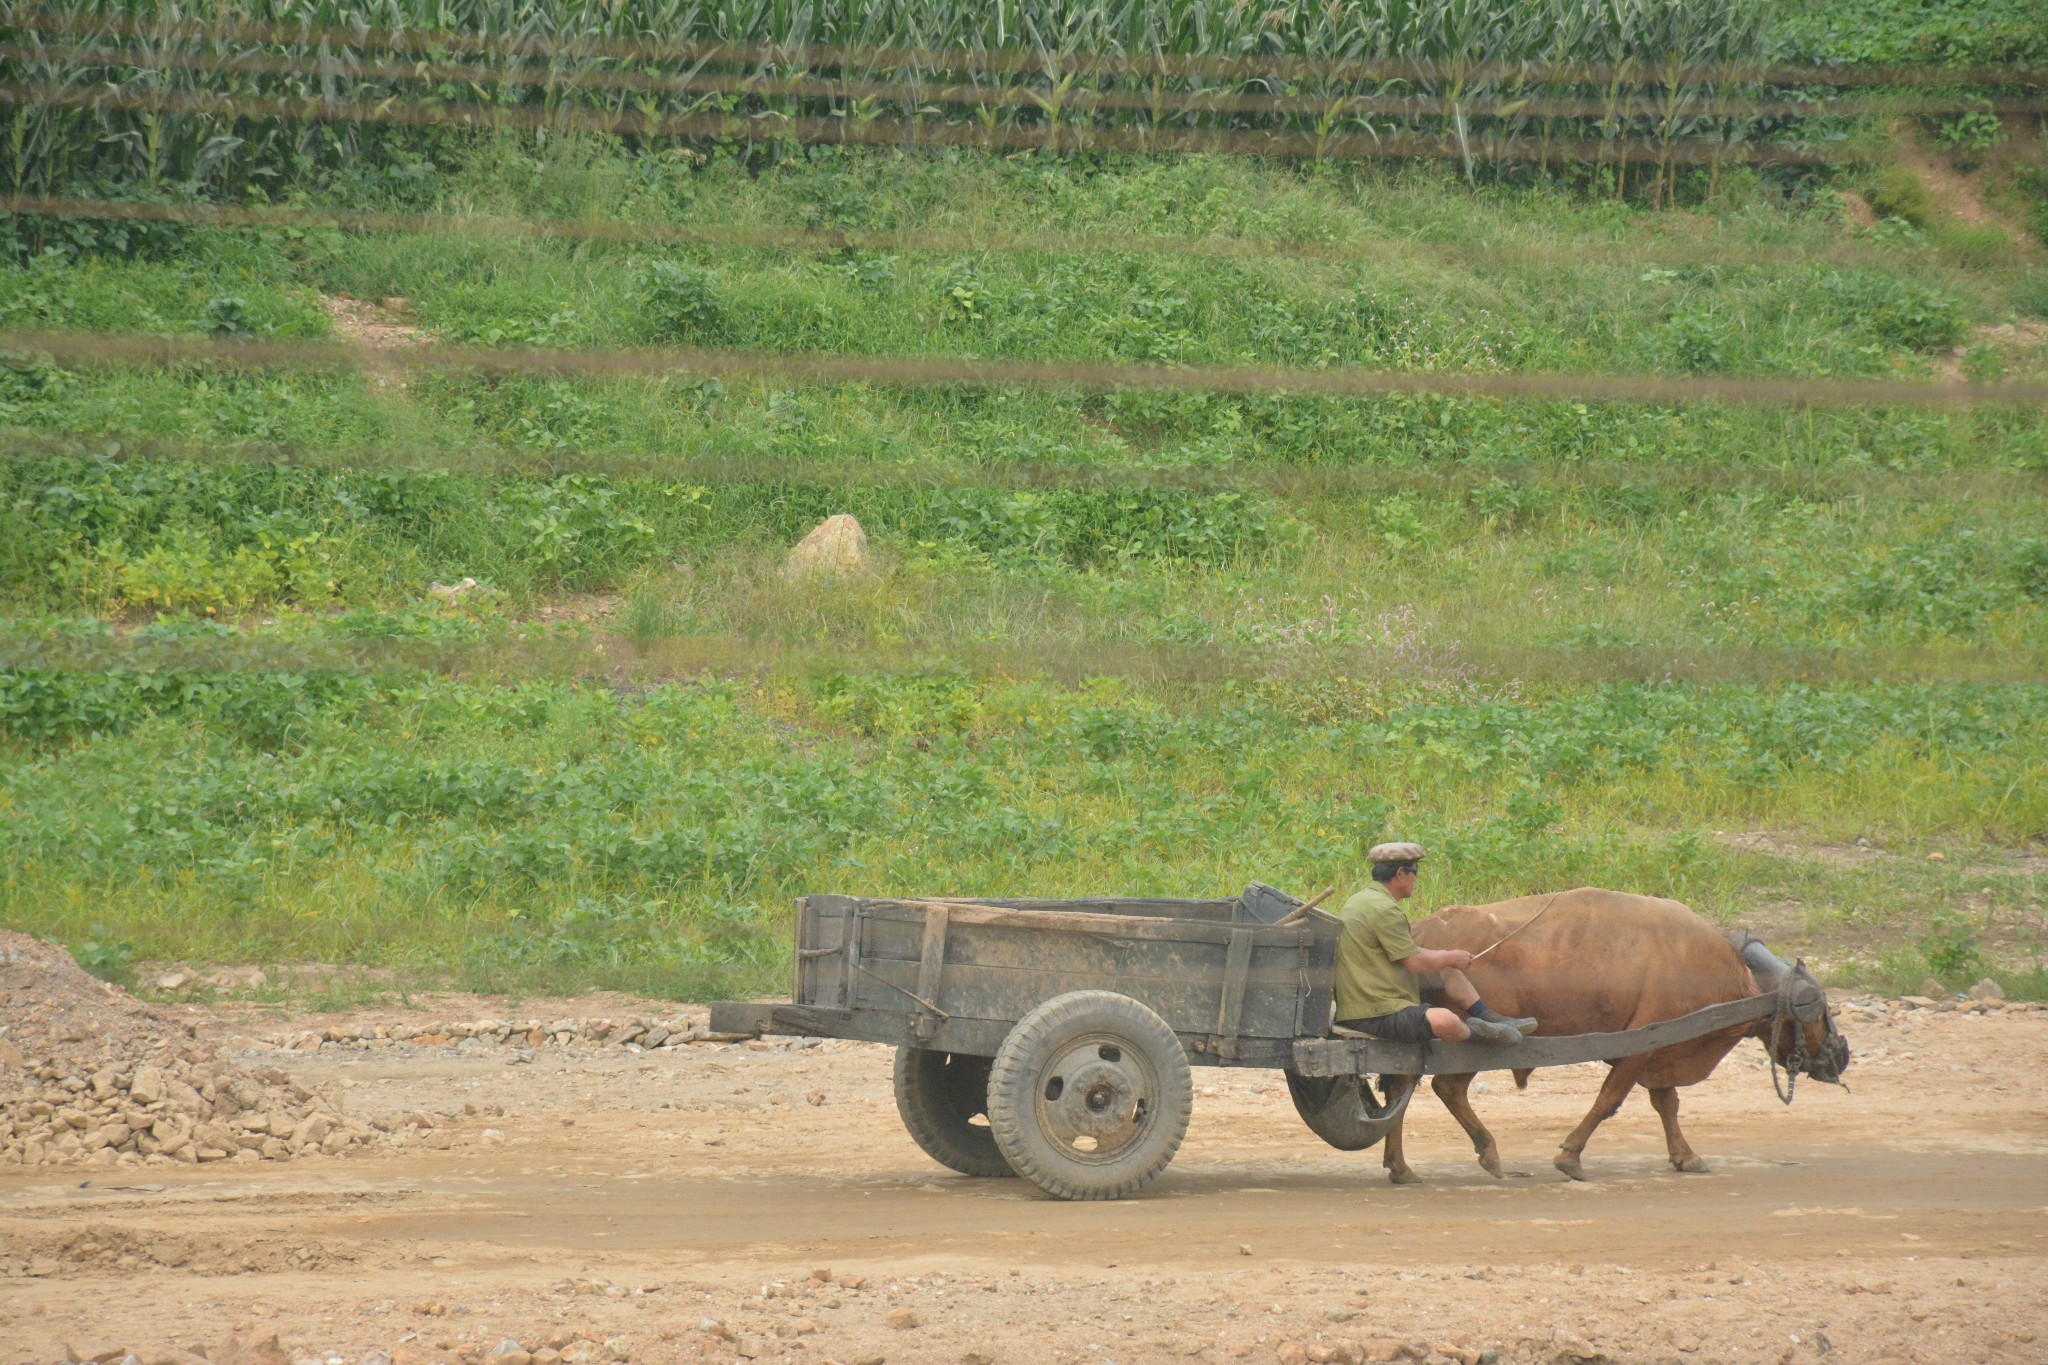 实拍朝鲜农村现状:牛车是主要交通工具,房子修建得像小别墅